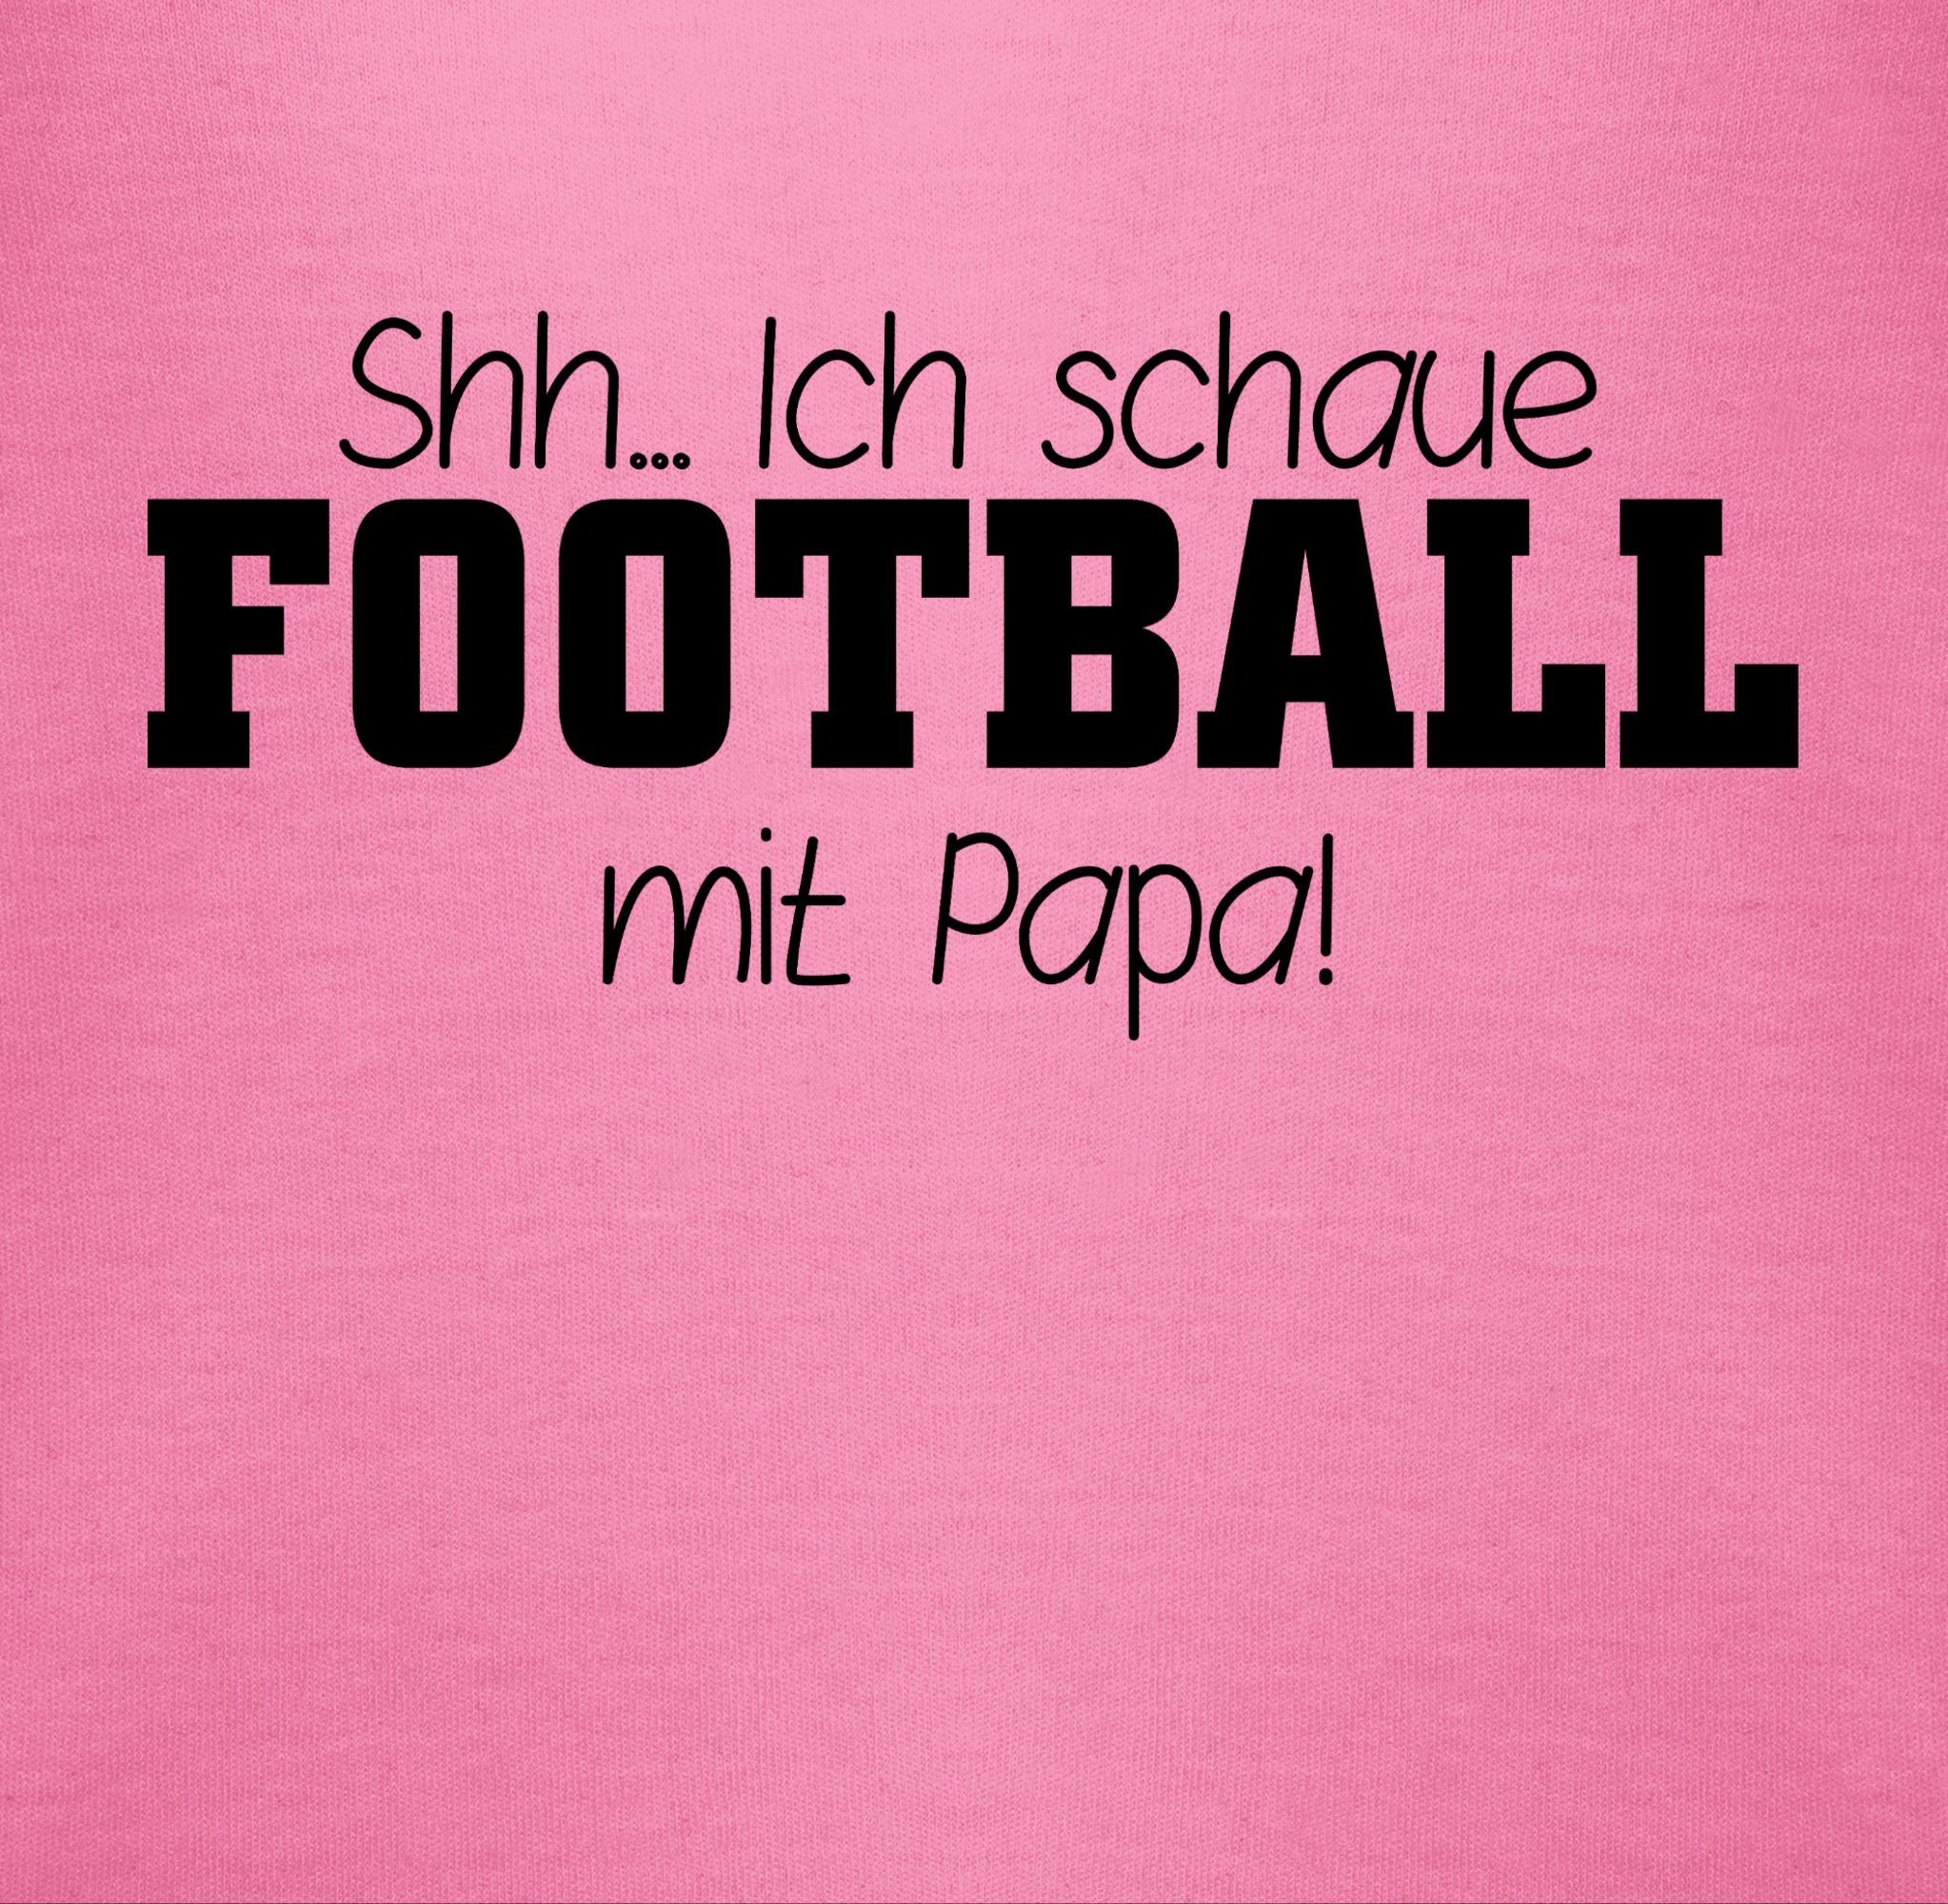 Sport 2 mit Papa! schwarz Shirtracer schaue Baby Football Shh...Ich Shirtbody Bewegung & - Pink